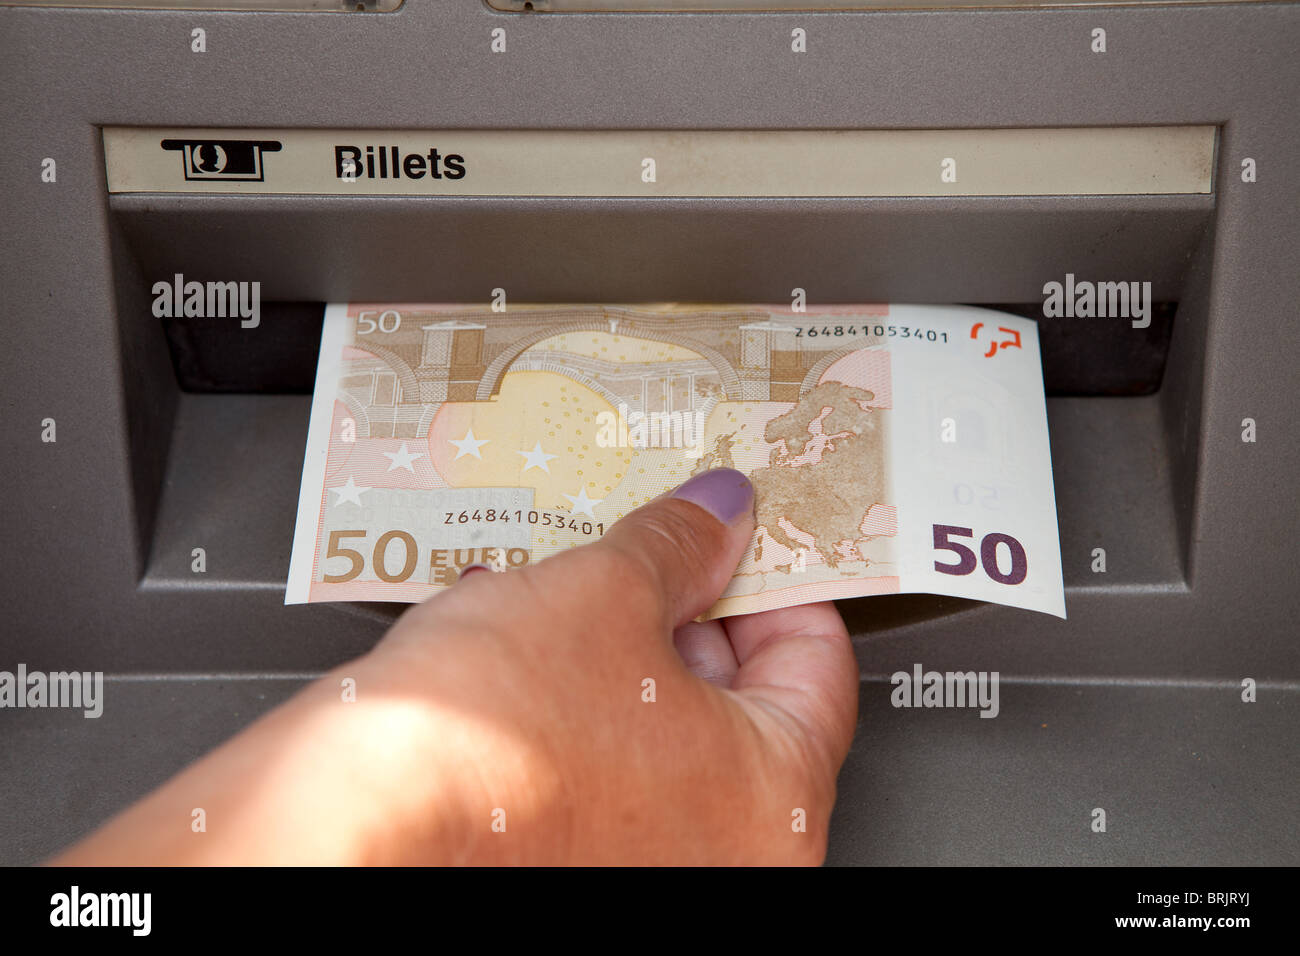 Accesso ATM : una mano womans sottrae denaro presso sportelli bancomat Foto Stock